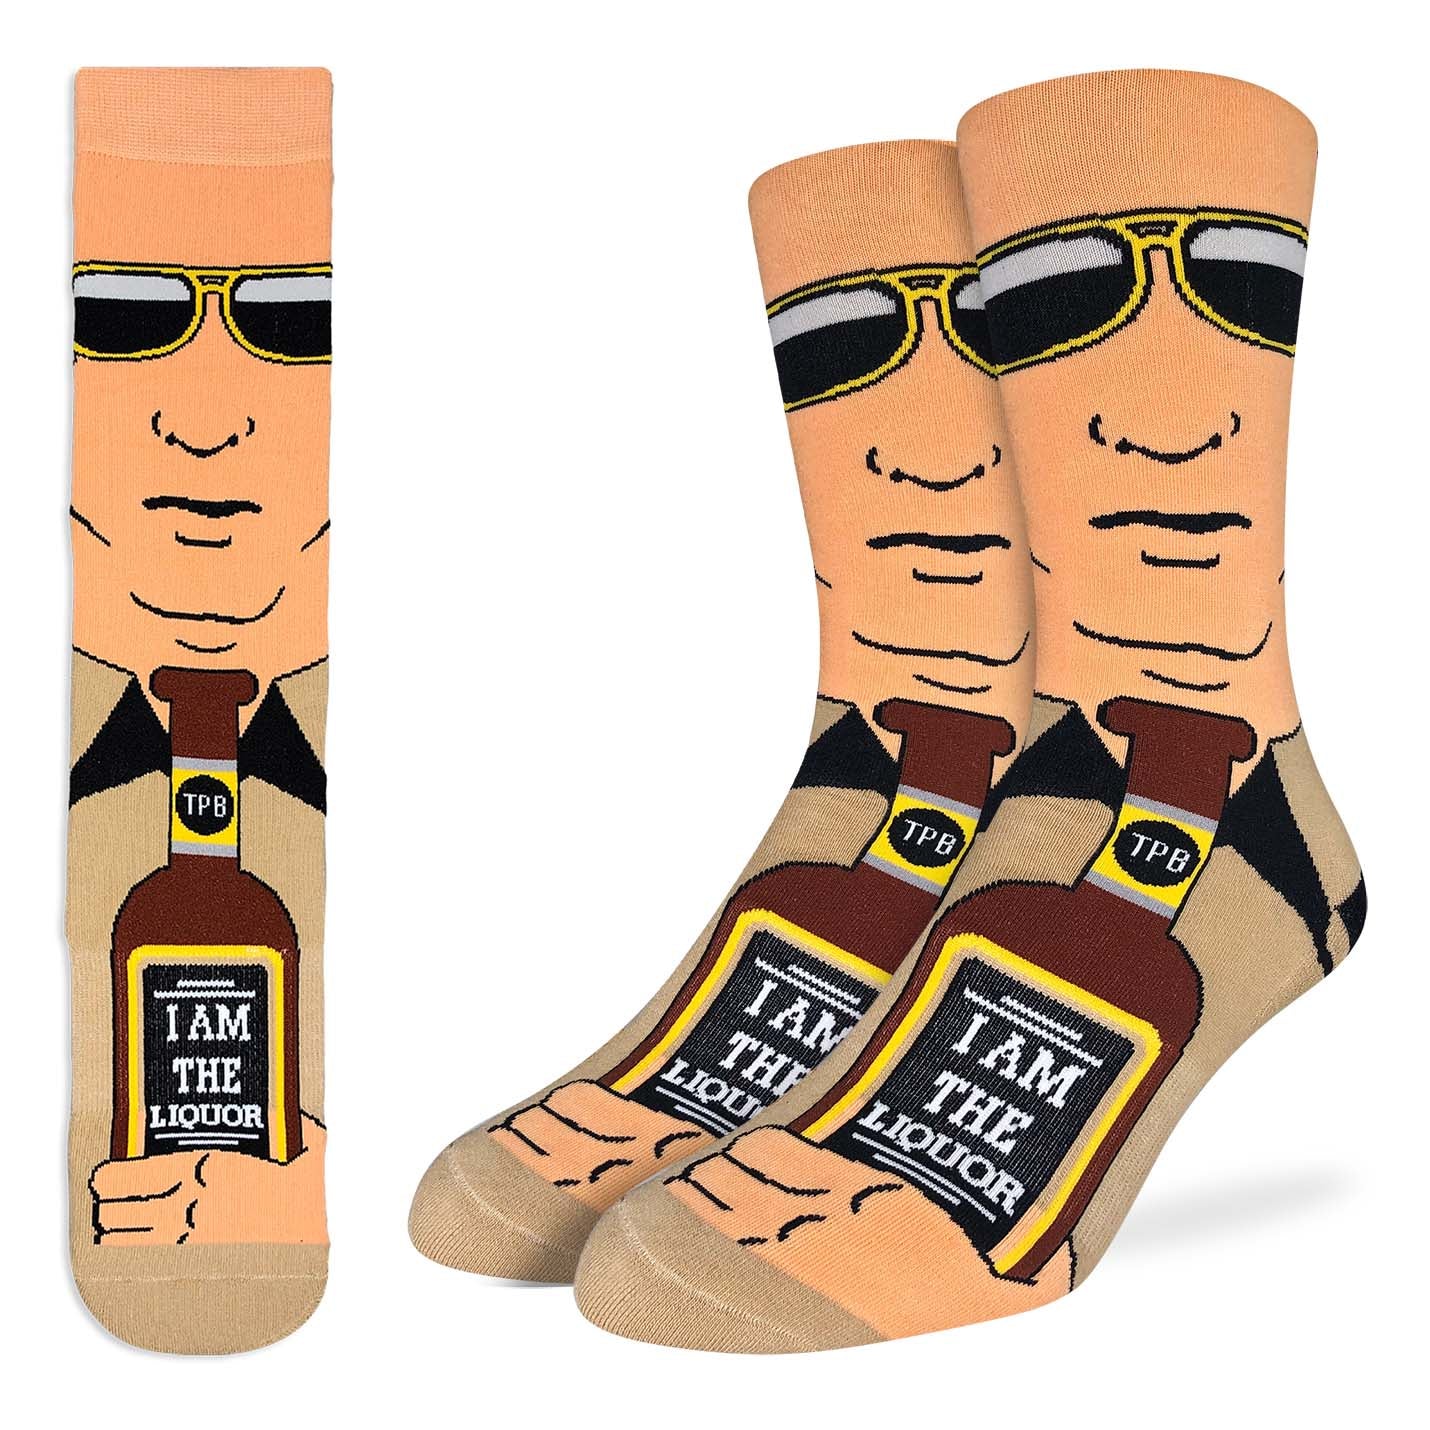 Jim Lahey Trailer Park Boys Socks (Size 8-13)